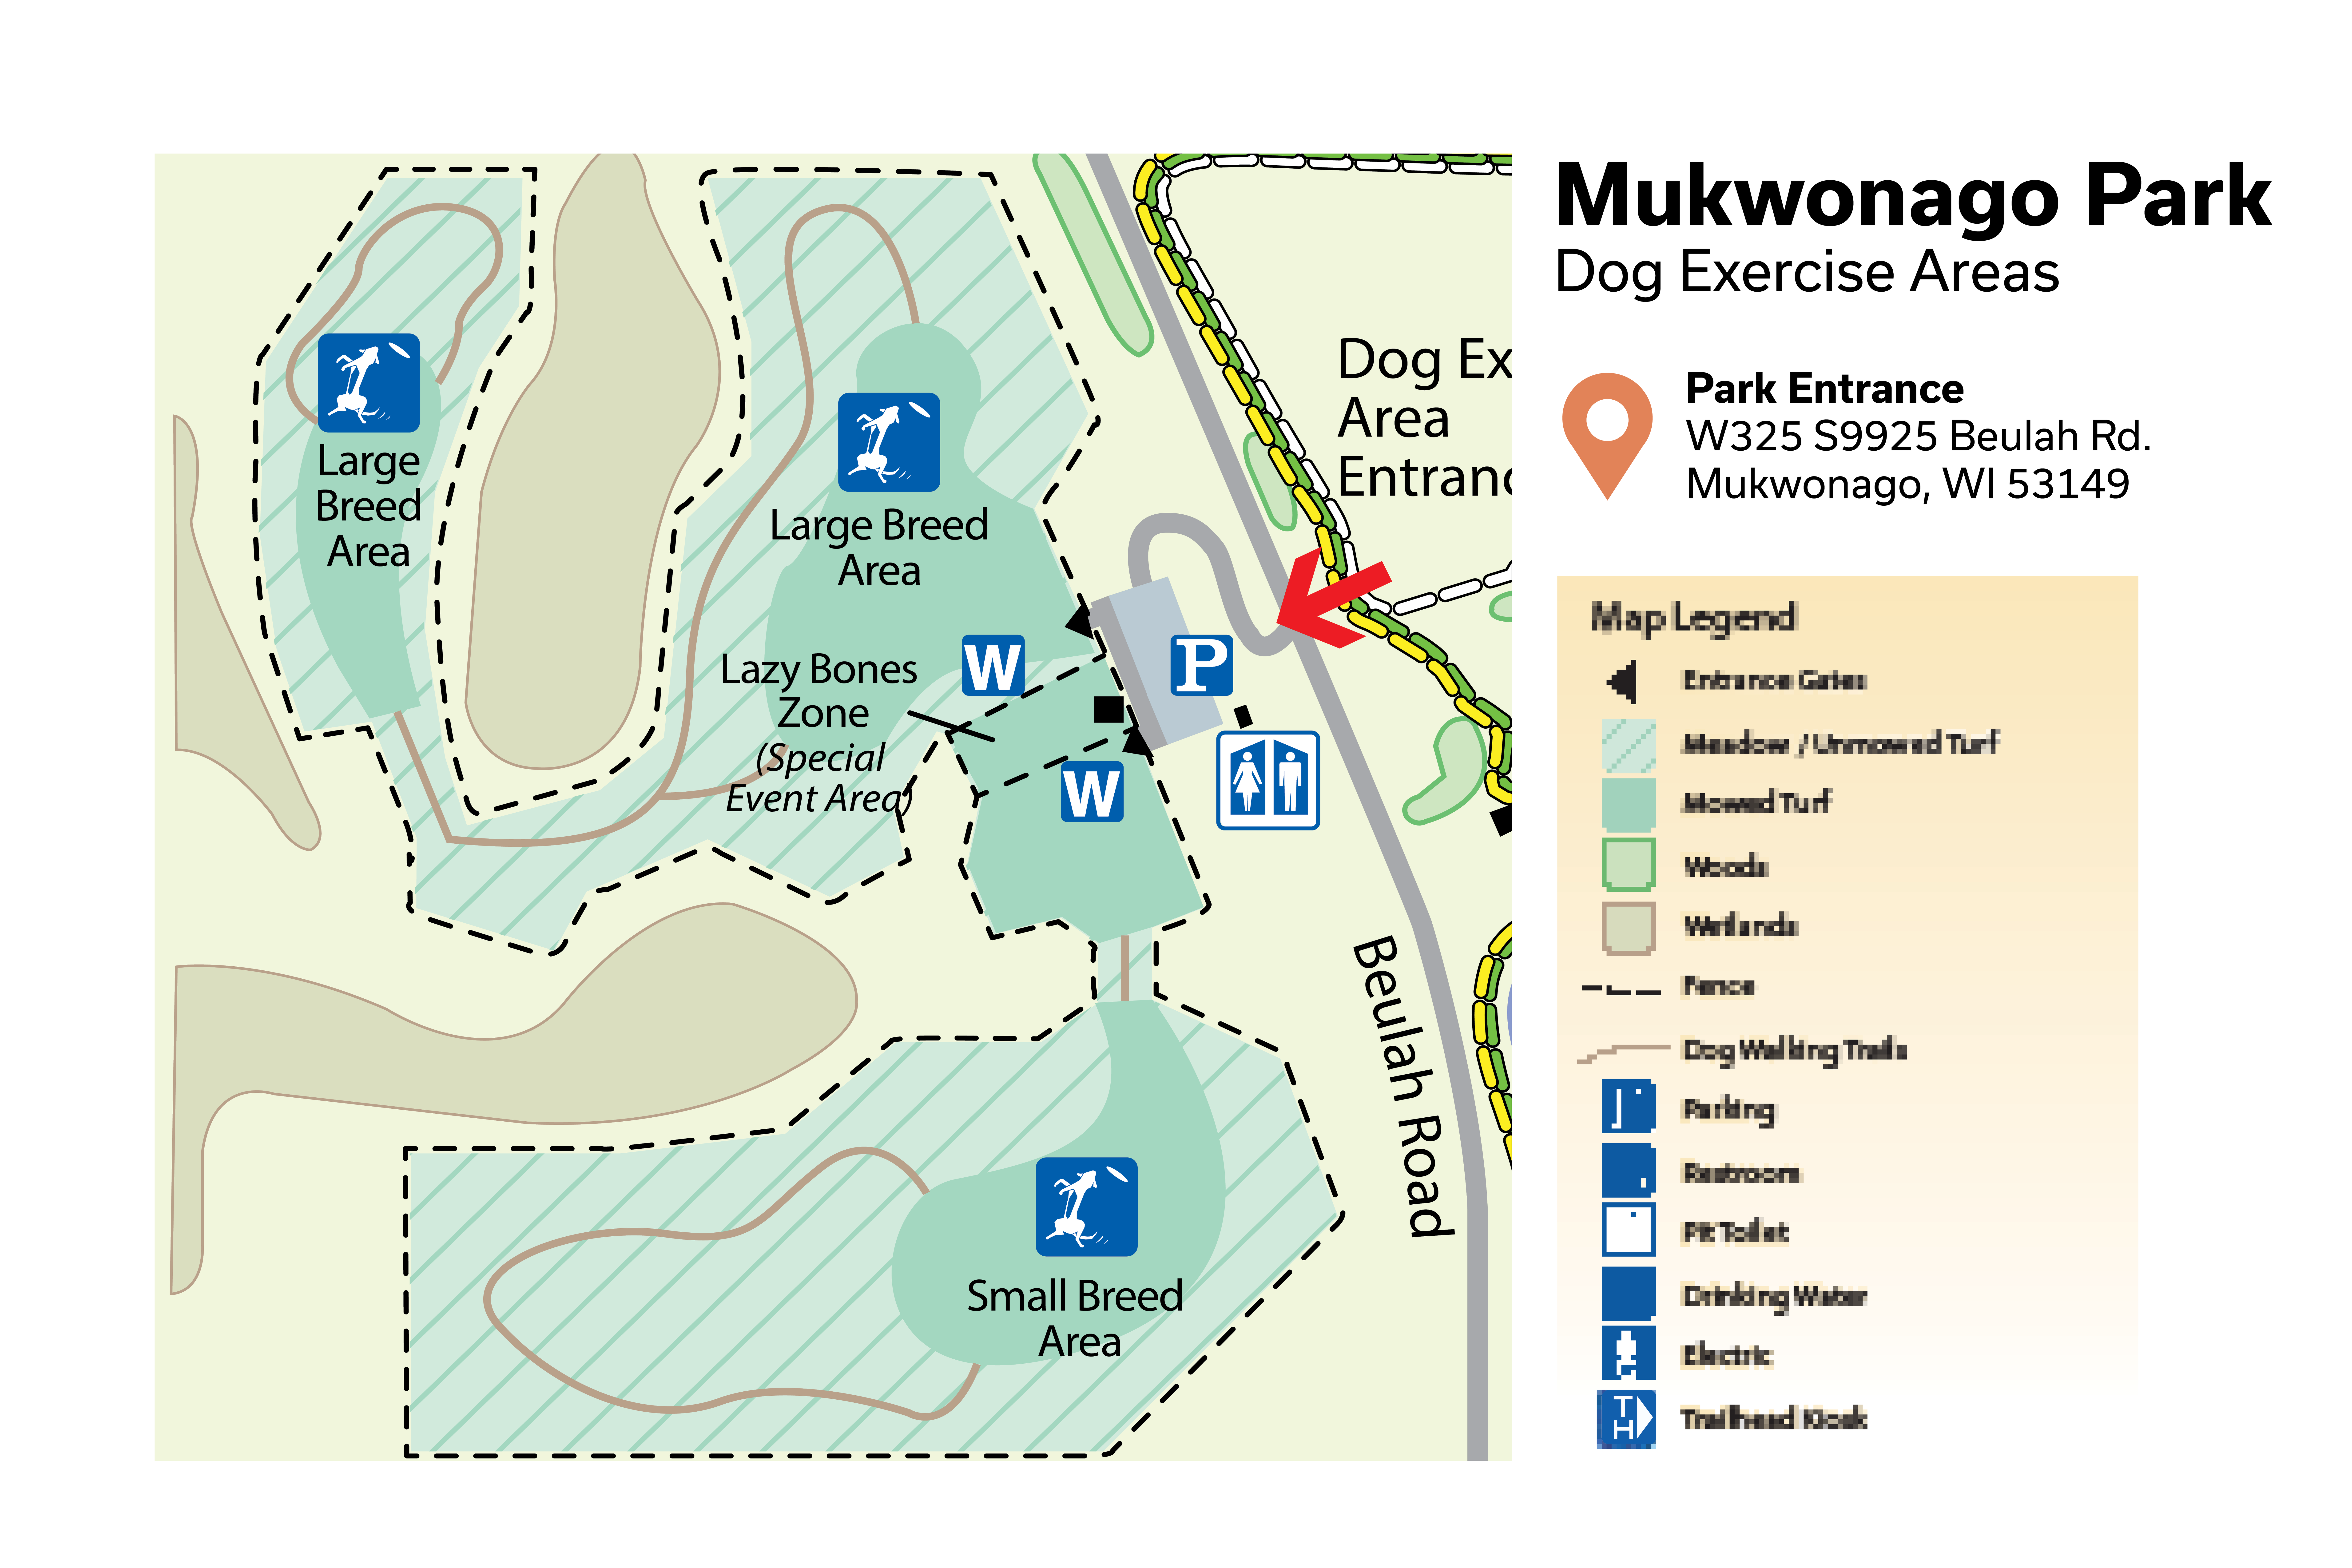 Map of Dog Exercise Areas at Mukwonago Park - Waukesha County Parks